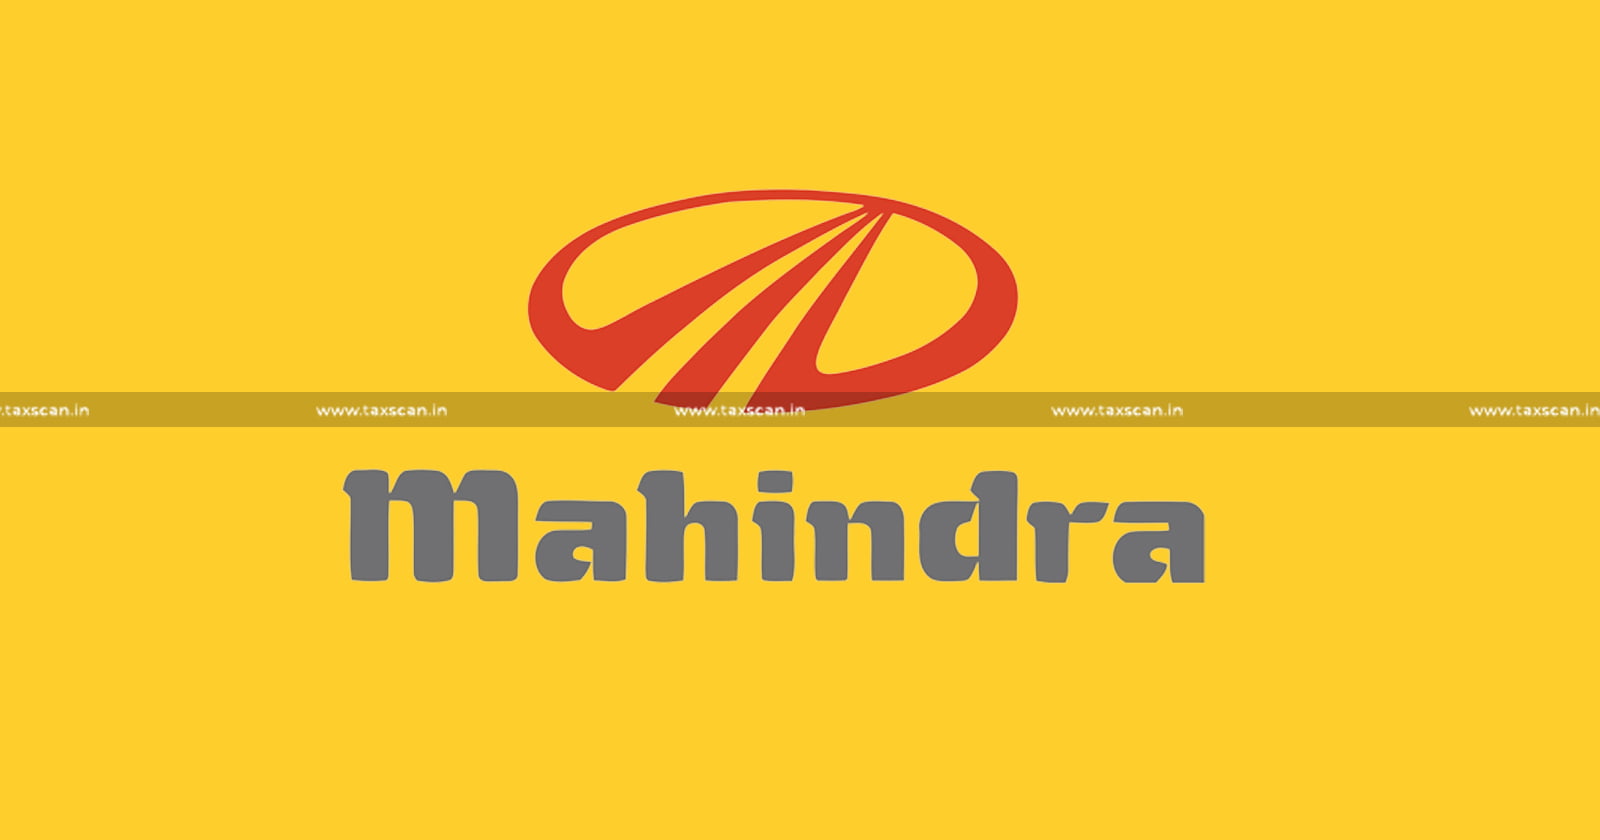 CA Vacancy in Mahindra - CA Hiring in Mahindra - Jobscan - taxscan